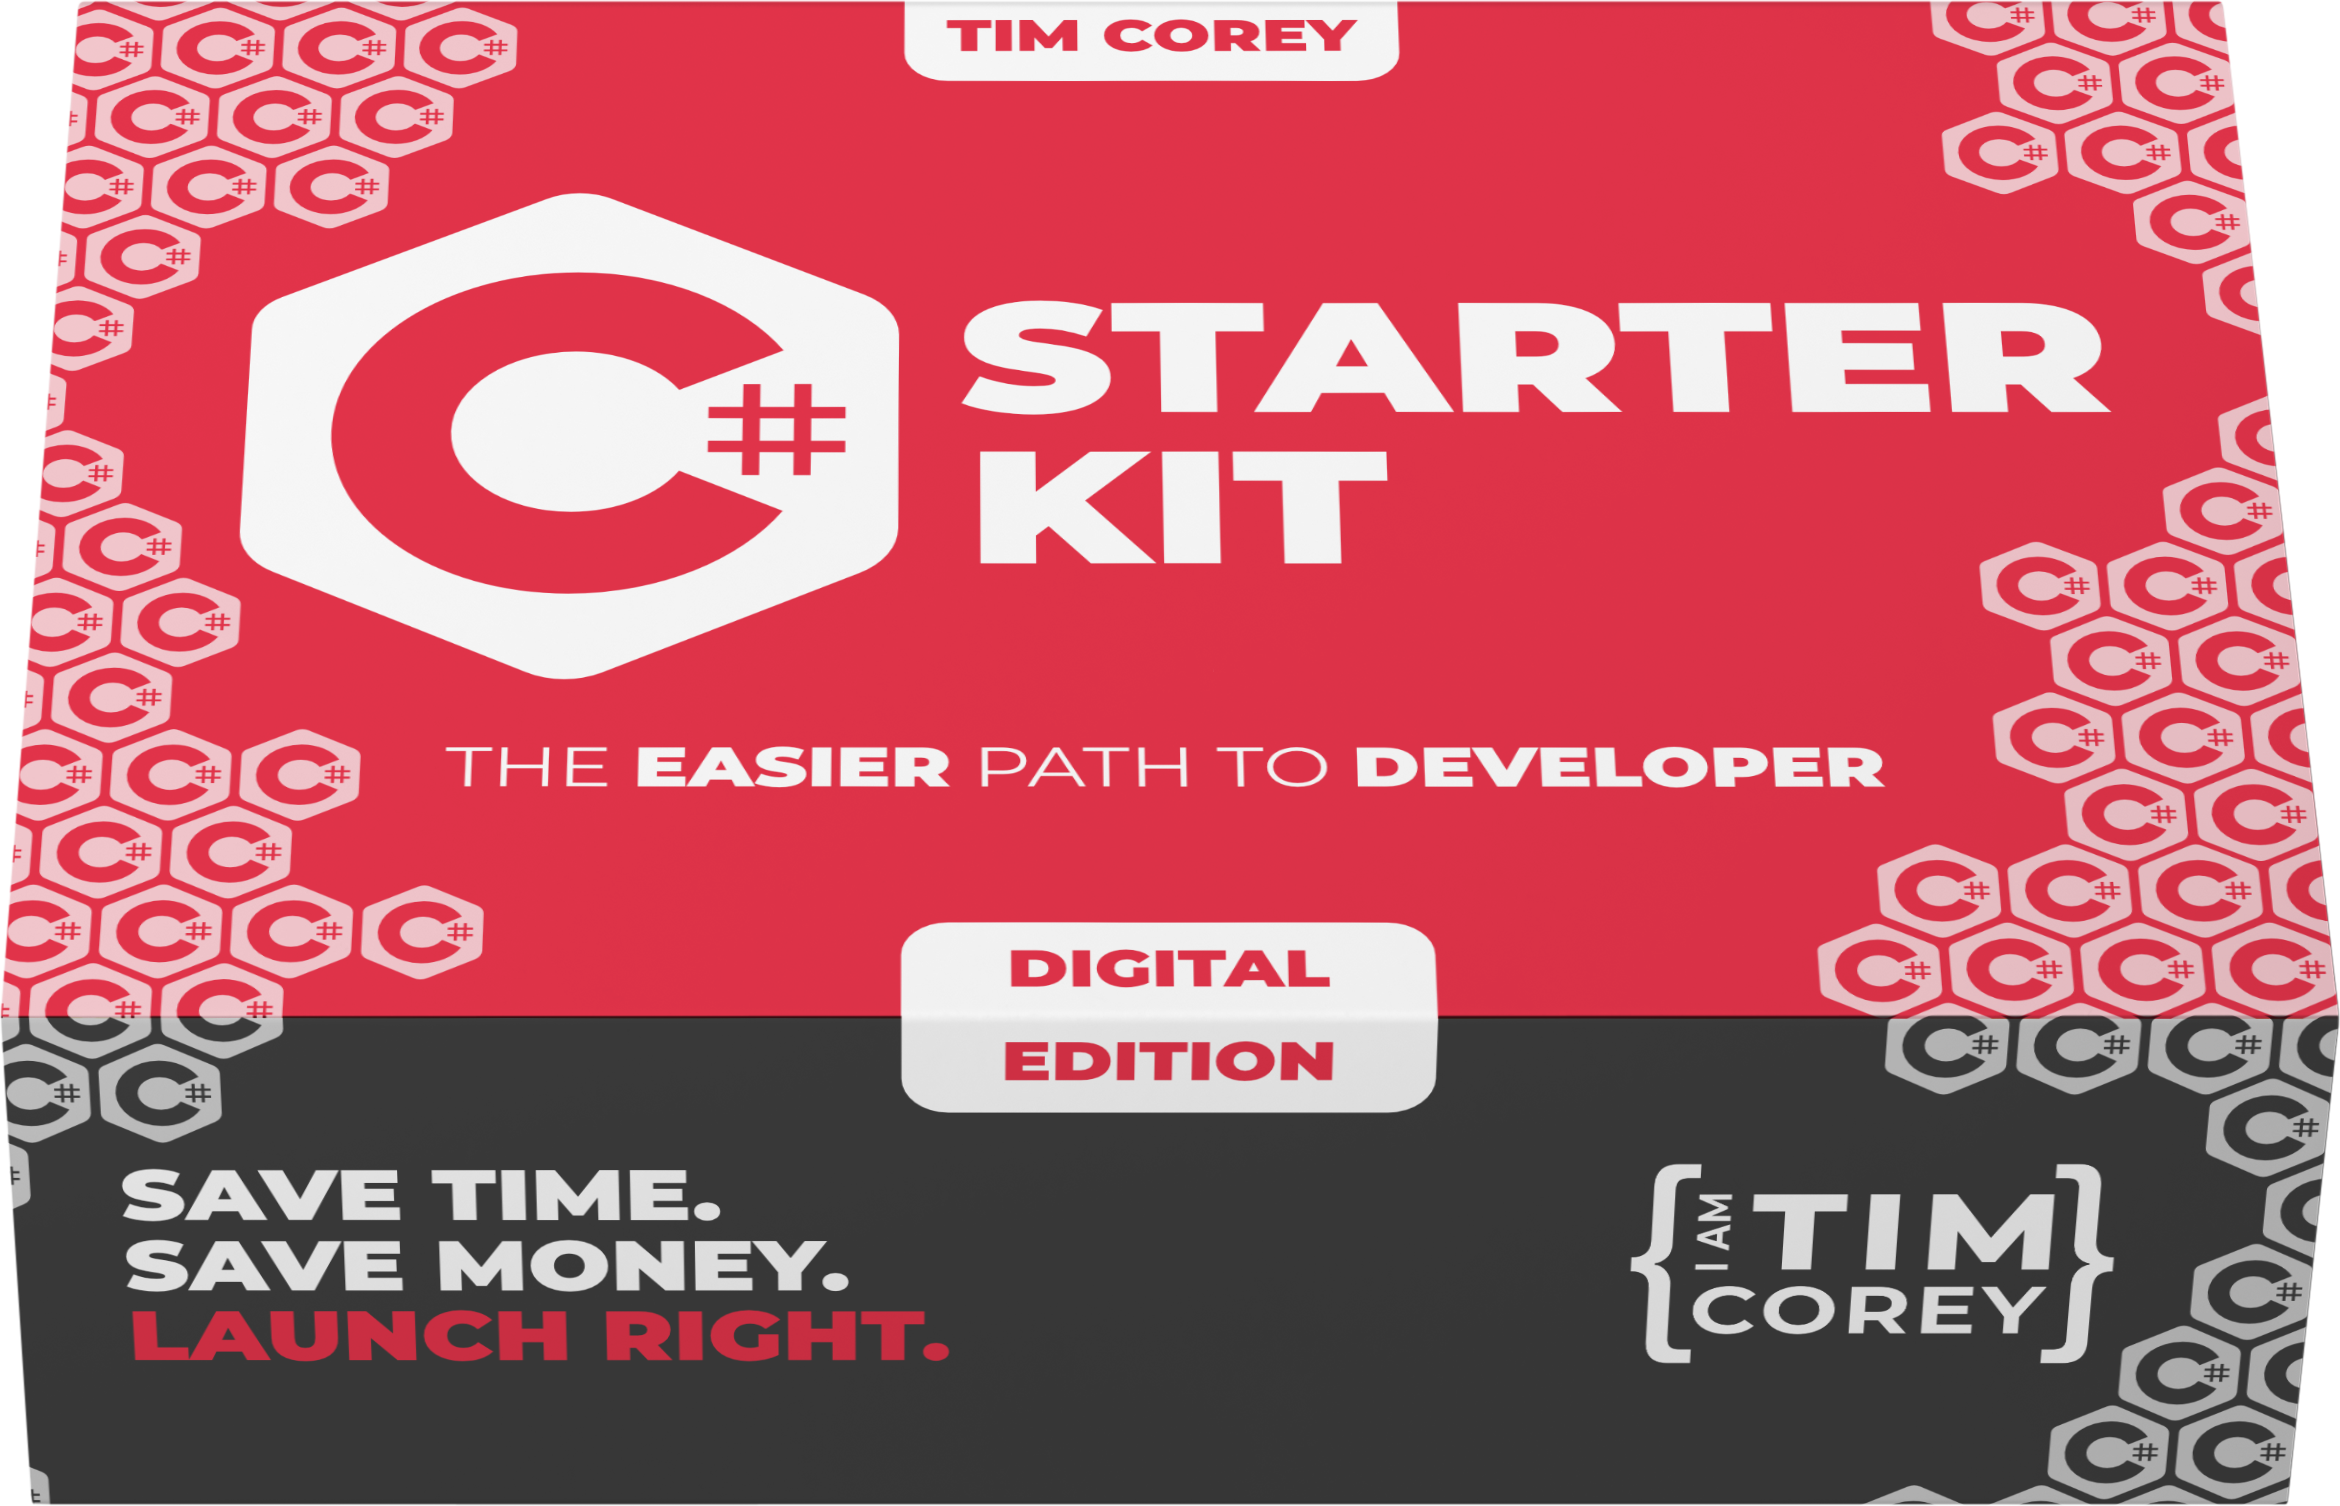 C# Starter Kit Image